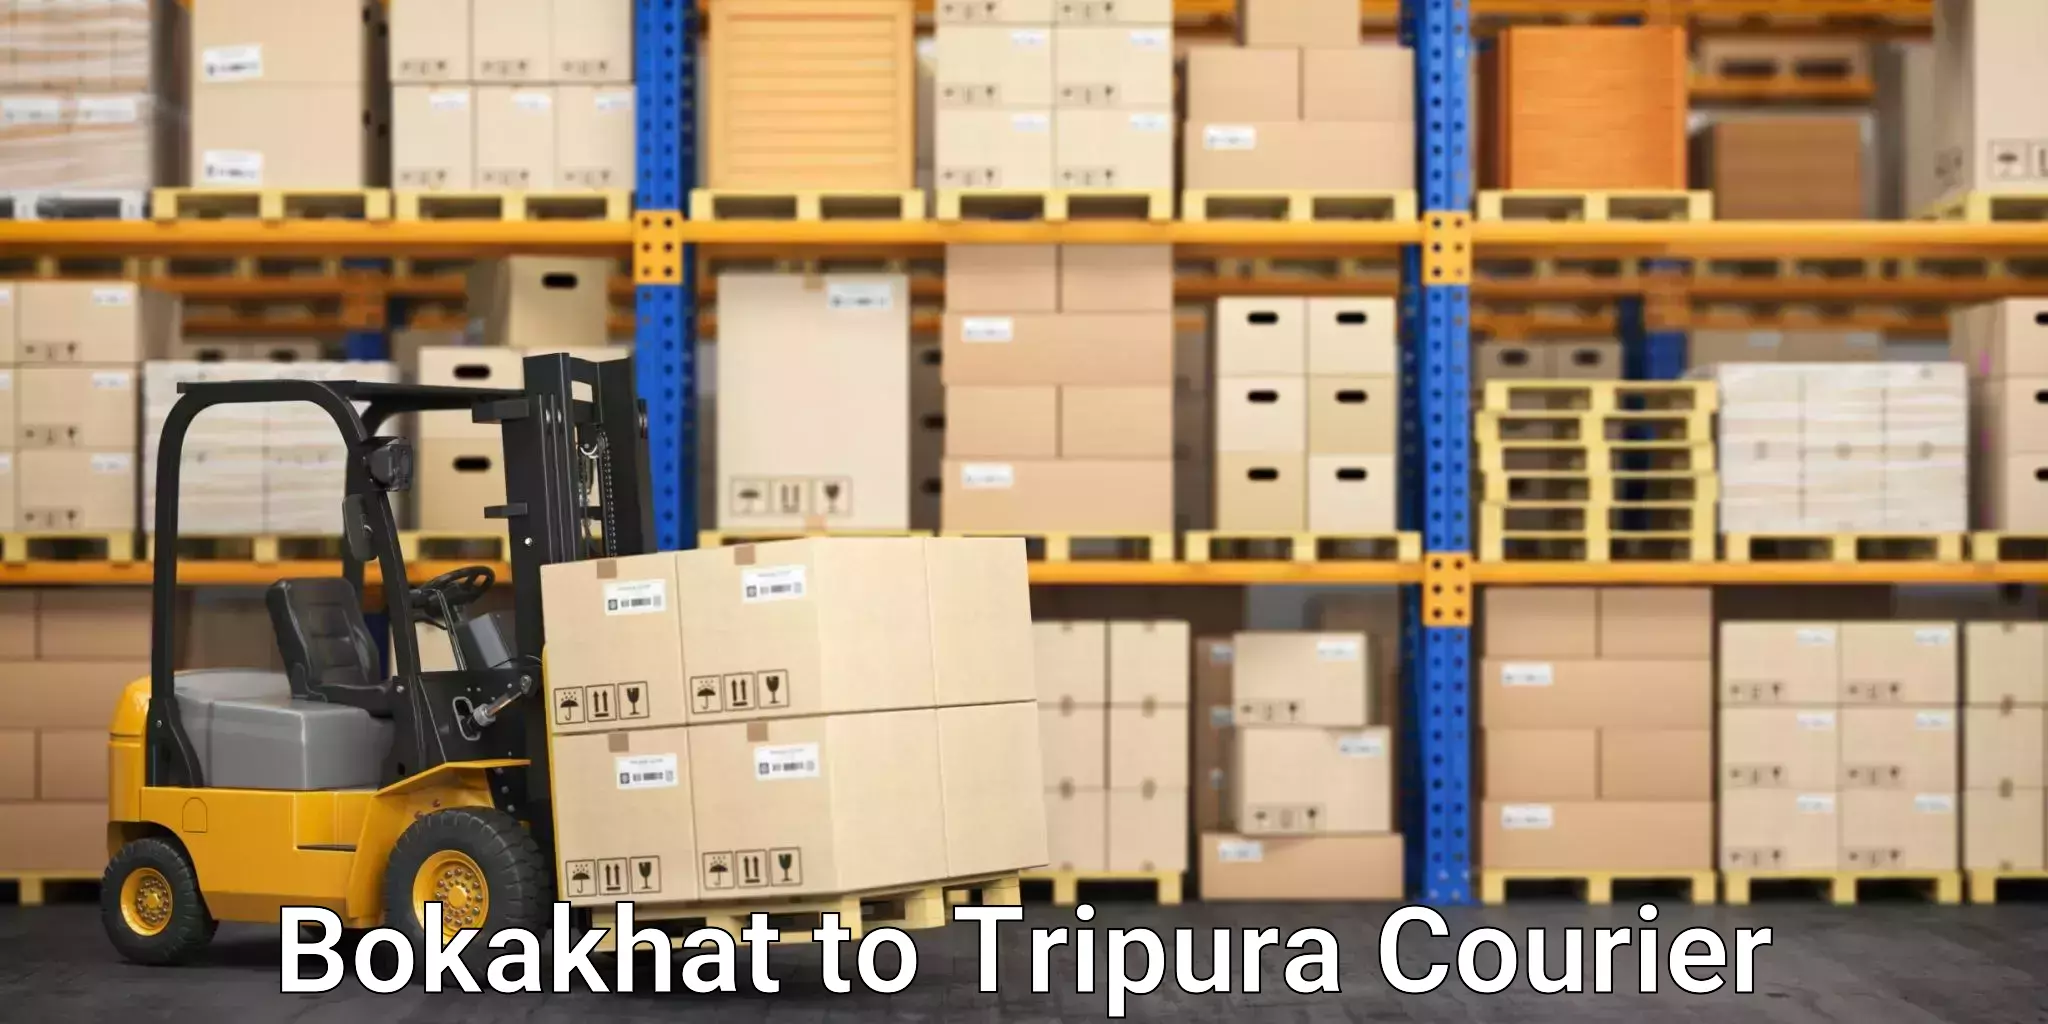 Efficient order fulfillment Bokakhat to Tripura